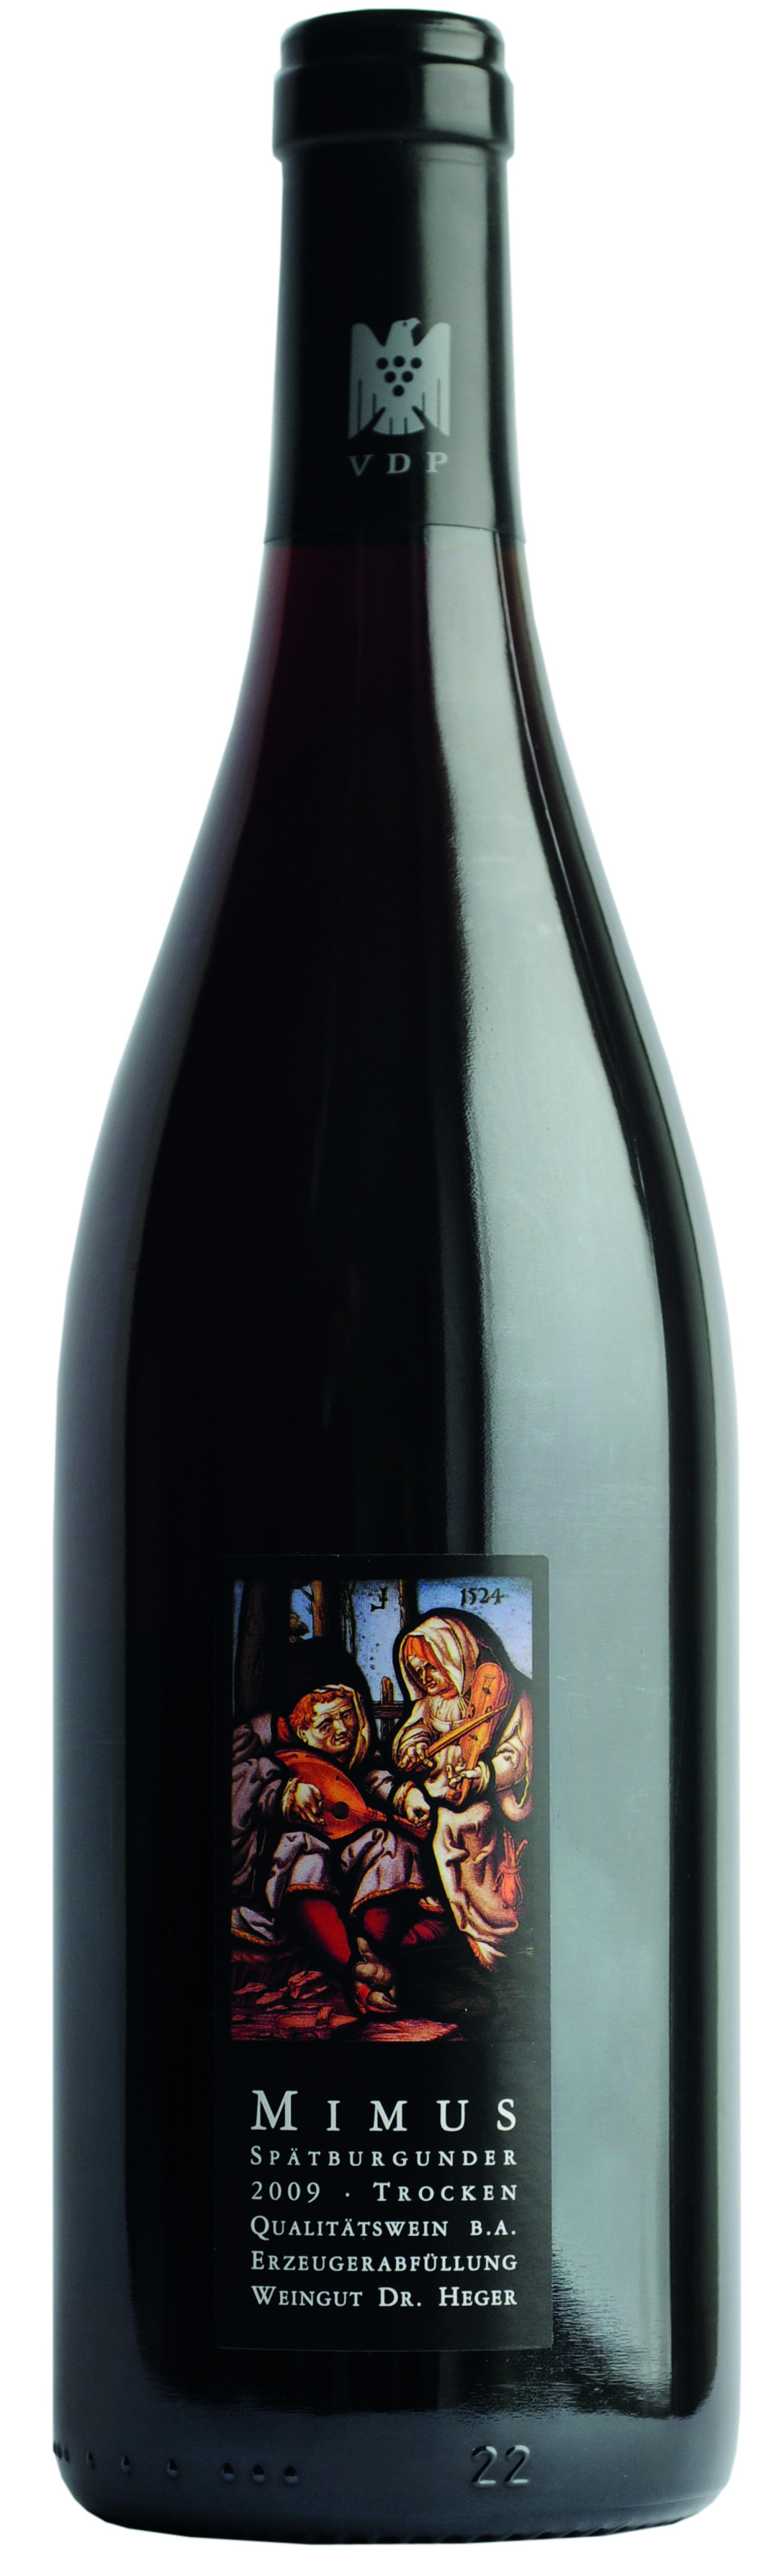 2014 Mimus Qualitätswein barrique 0.75l